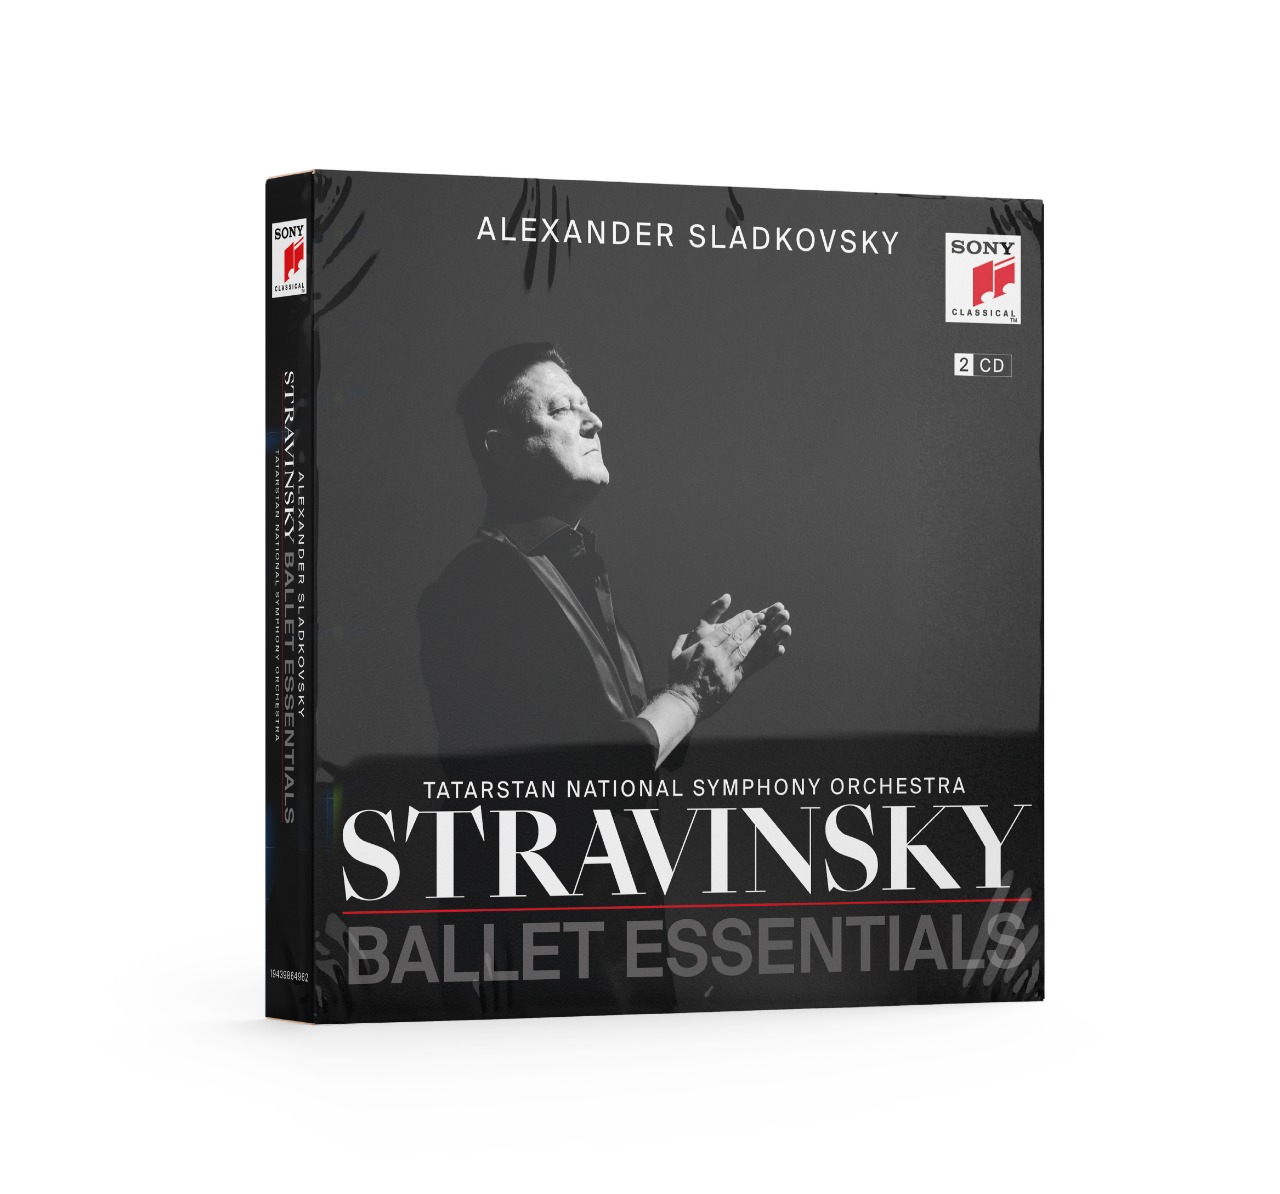 Stravinsky. Ballet Essentials